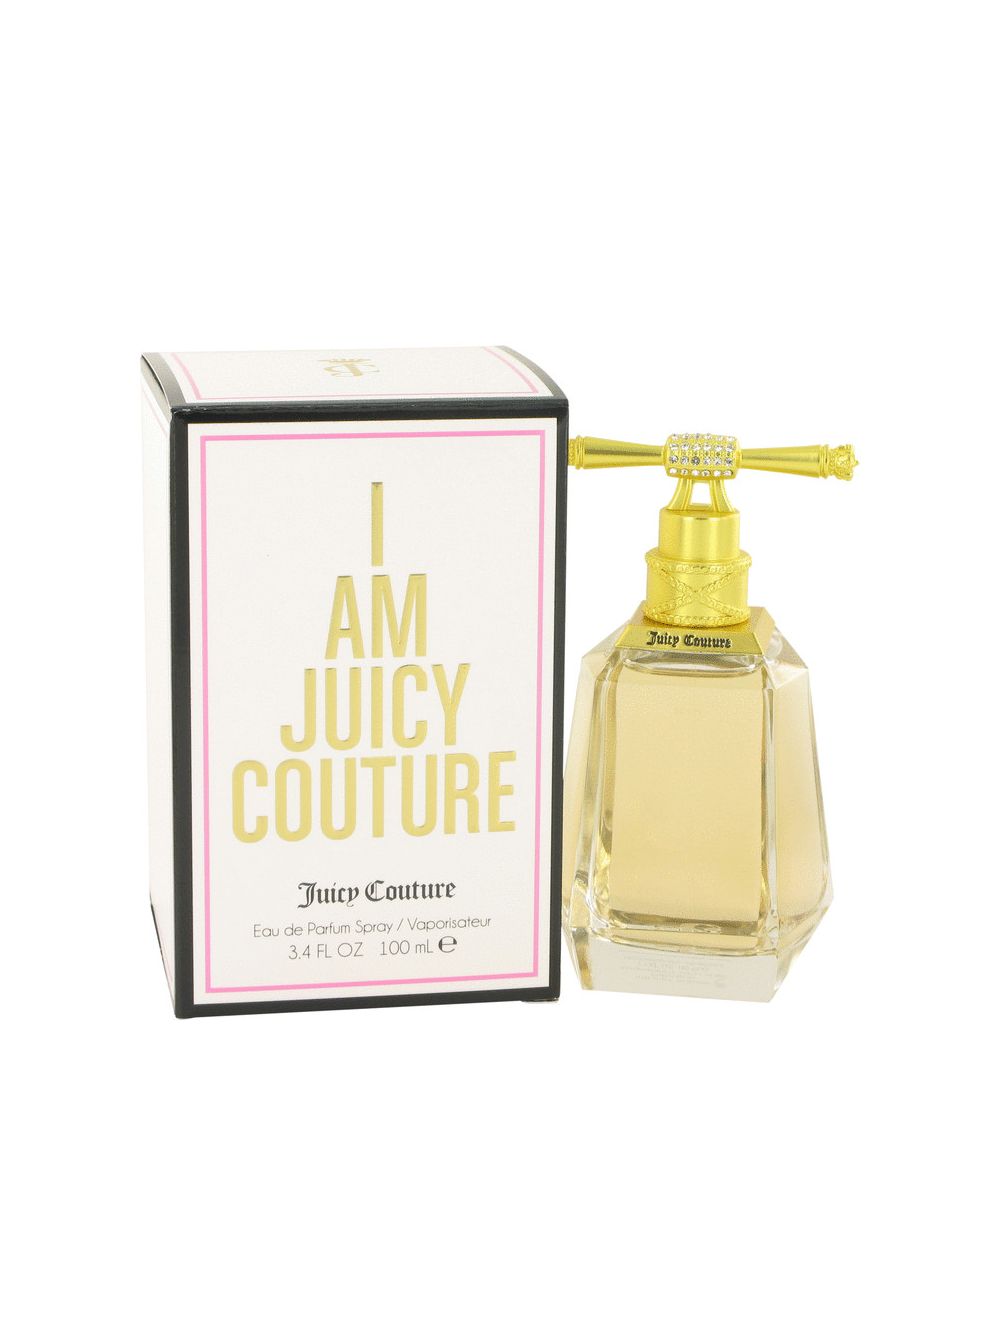 I Love Juicy Couture by Juicy Couture Eau de Parfum Spray 3.4 oz Women